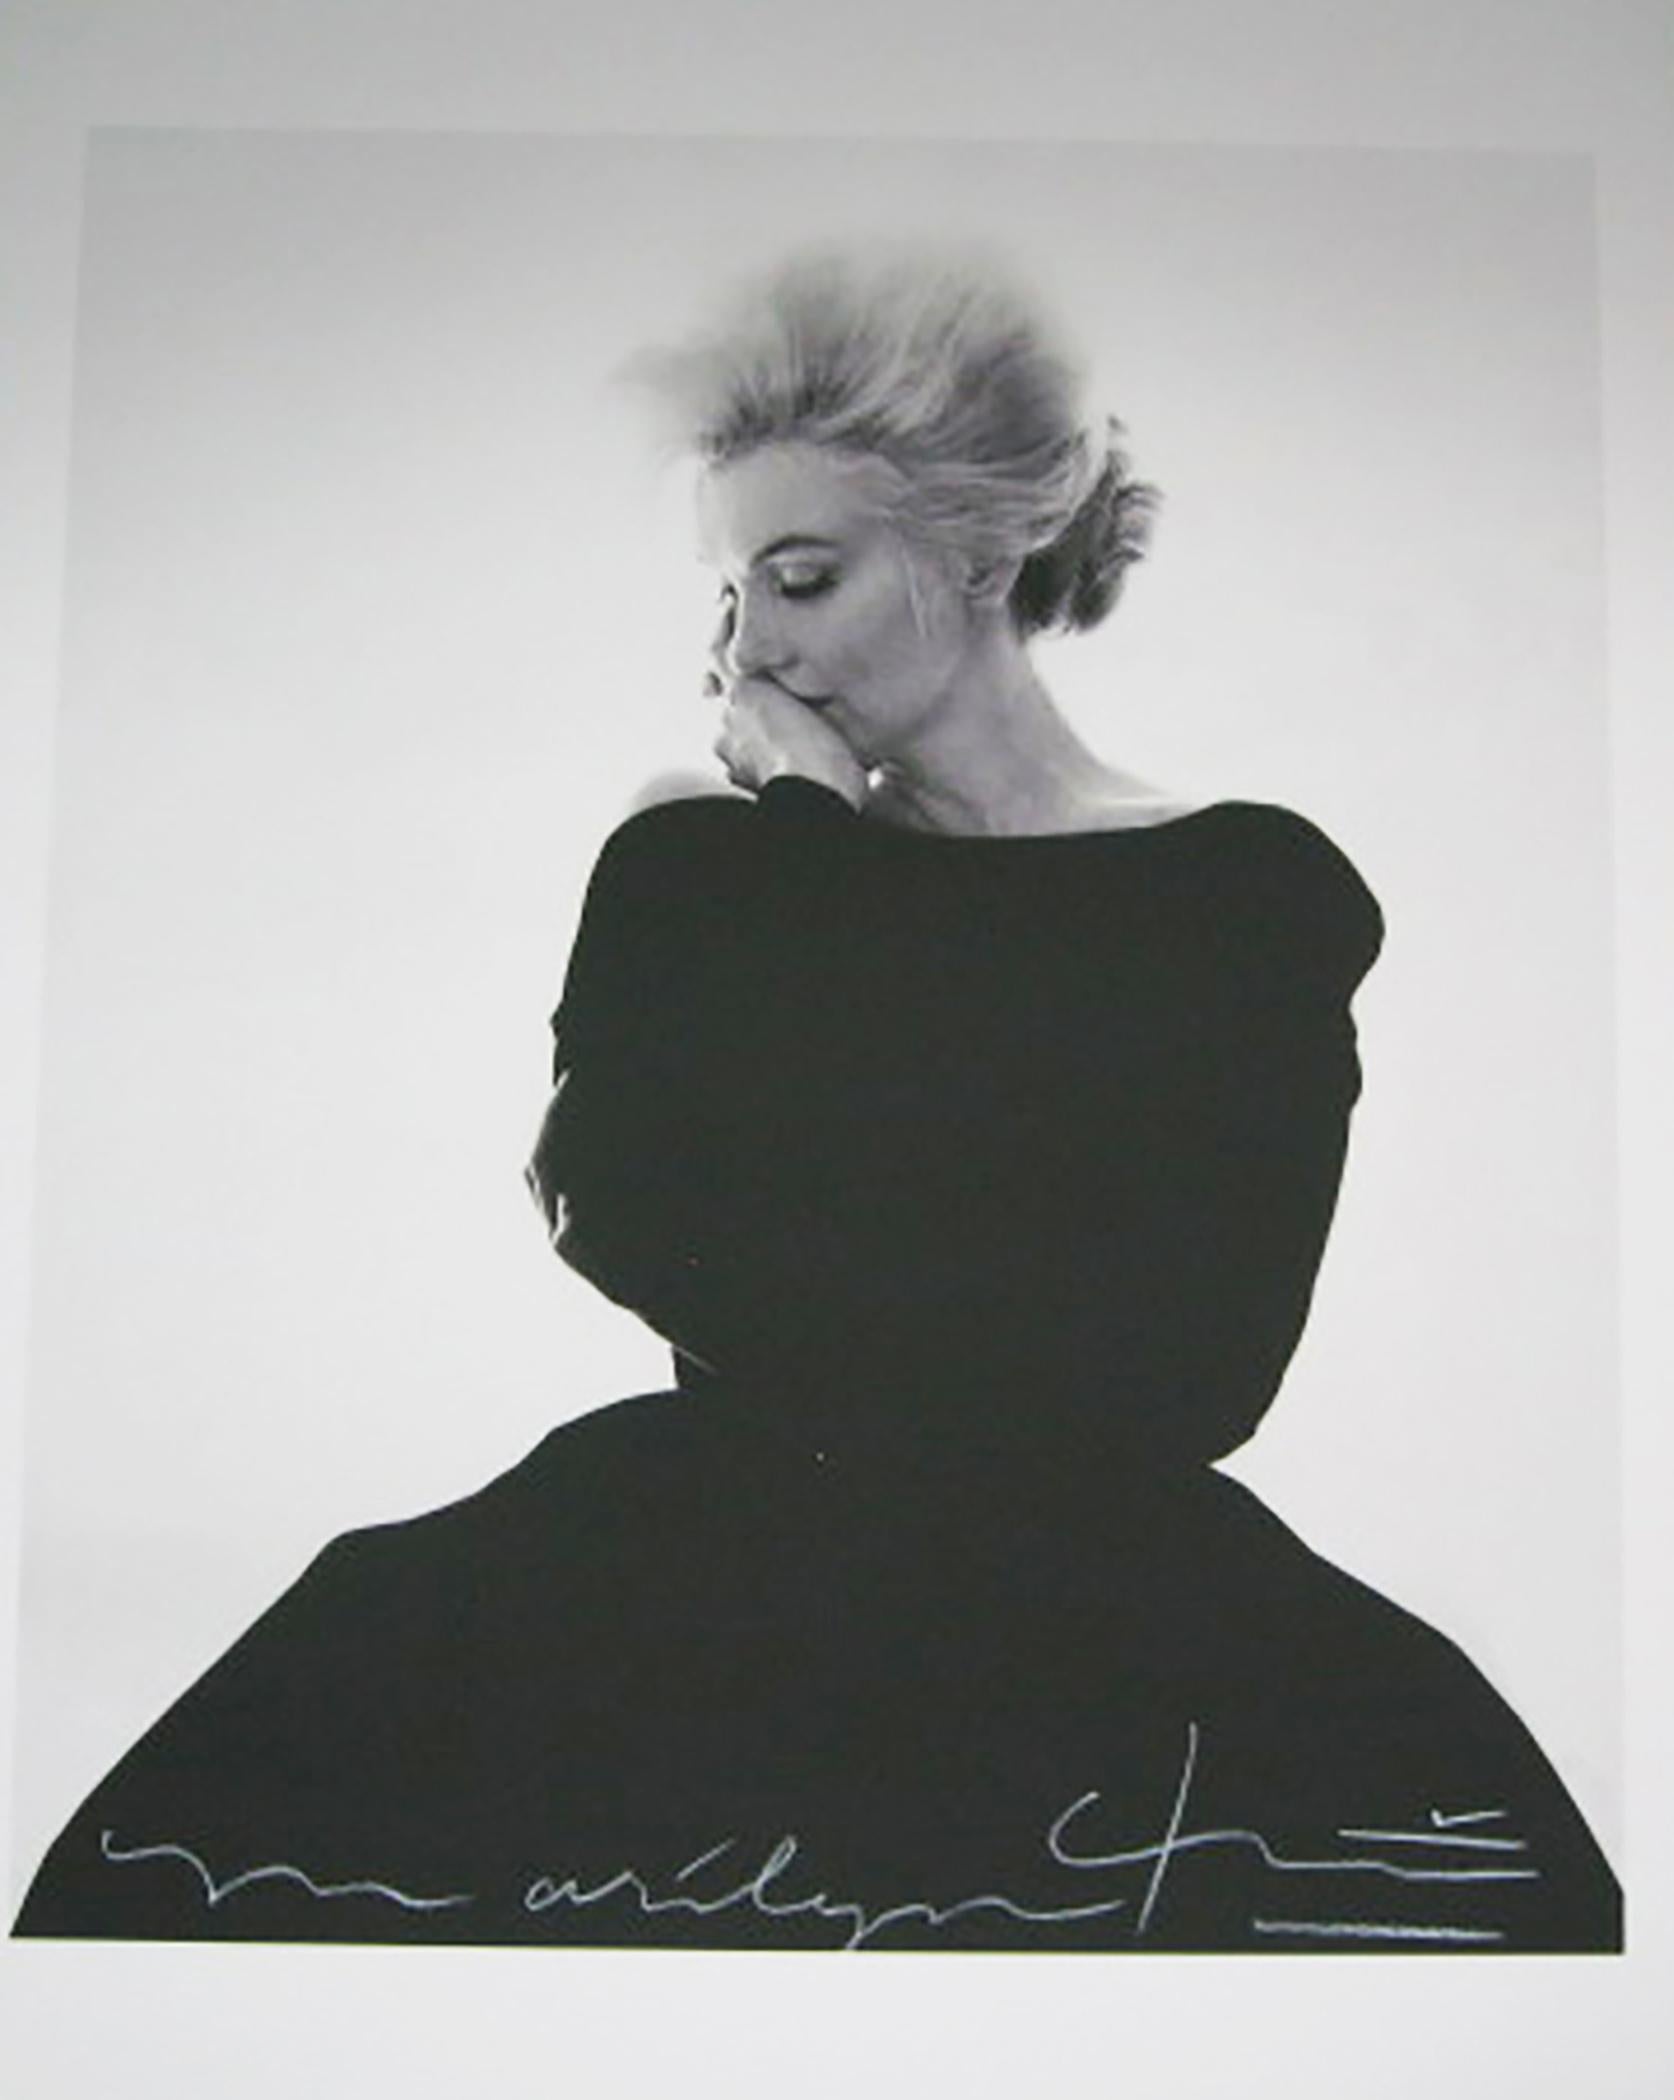 Bert stern
Marilyn dans Vogue 
La dernière séance (1962)
superbe et grande photo de Marilyn Monroe dans la mythique robe noire de Christian Dior pour le magazine Vogue
papier photographique 
format 91 X61 cms
image 61 x 56 cms
signé et numéro